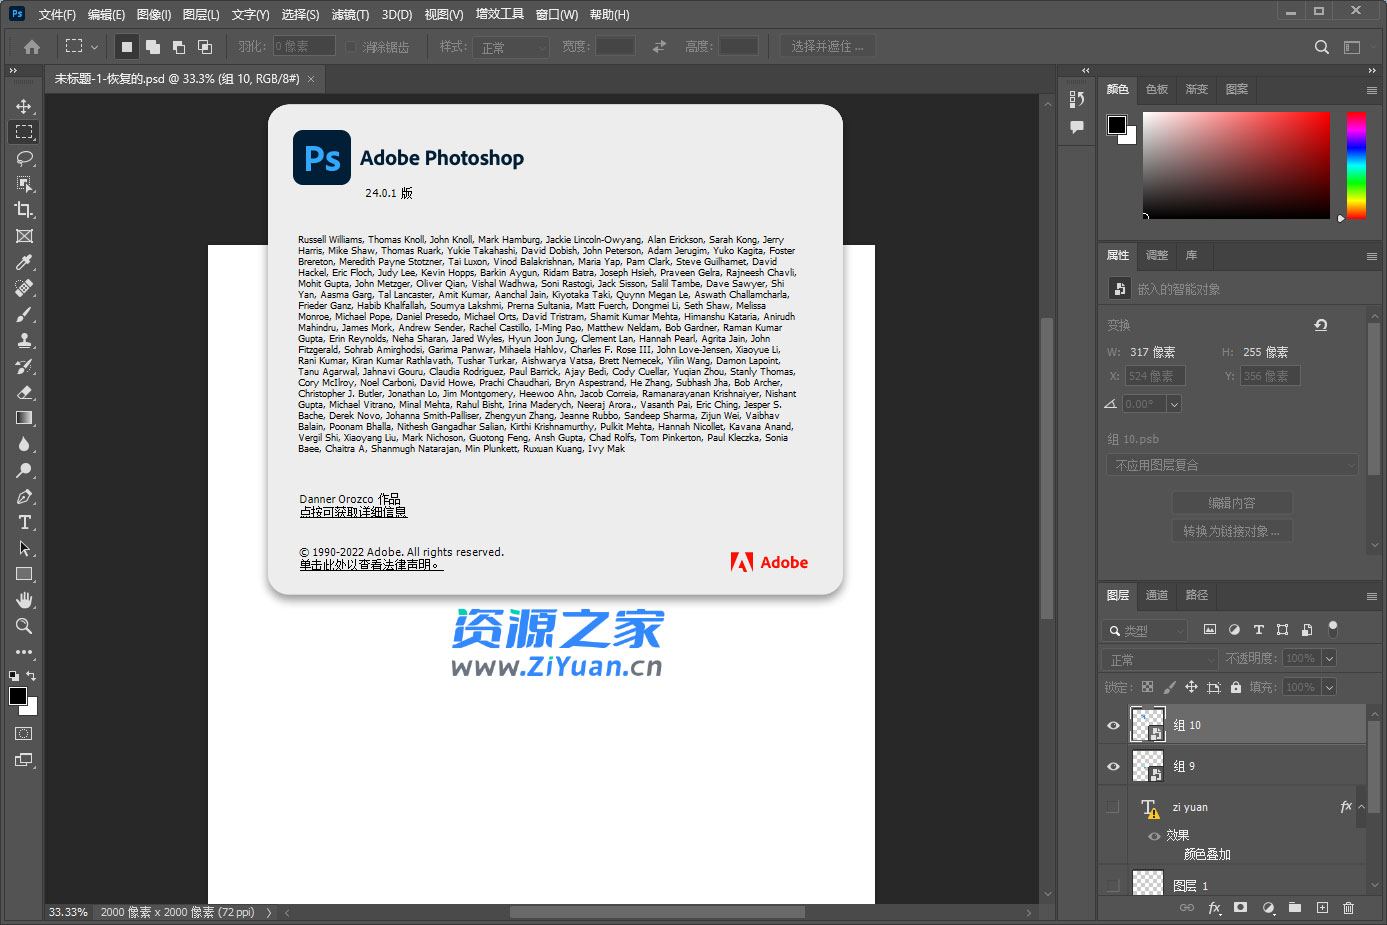 Adobe Photoshop 2023 v24.2.1.358 特别版